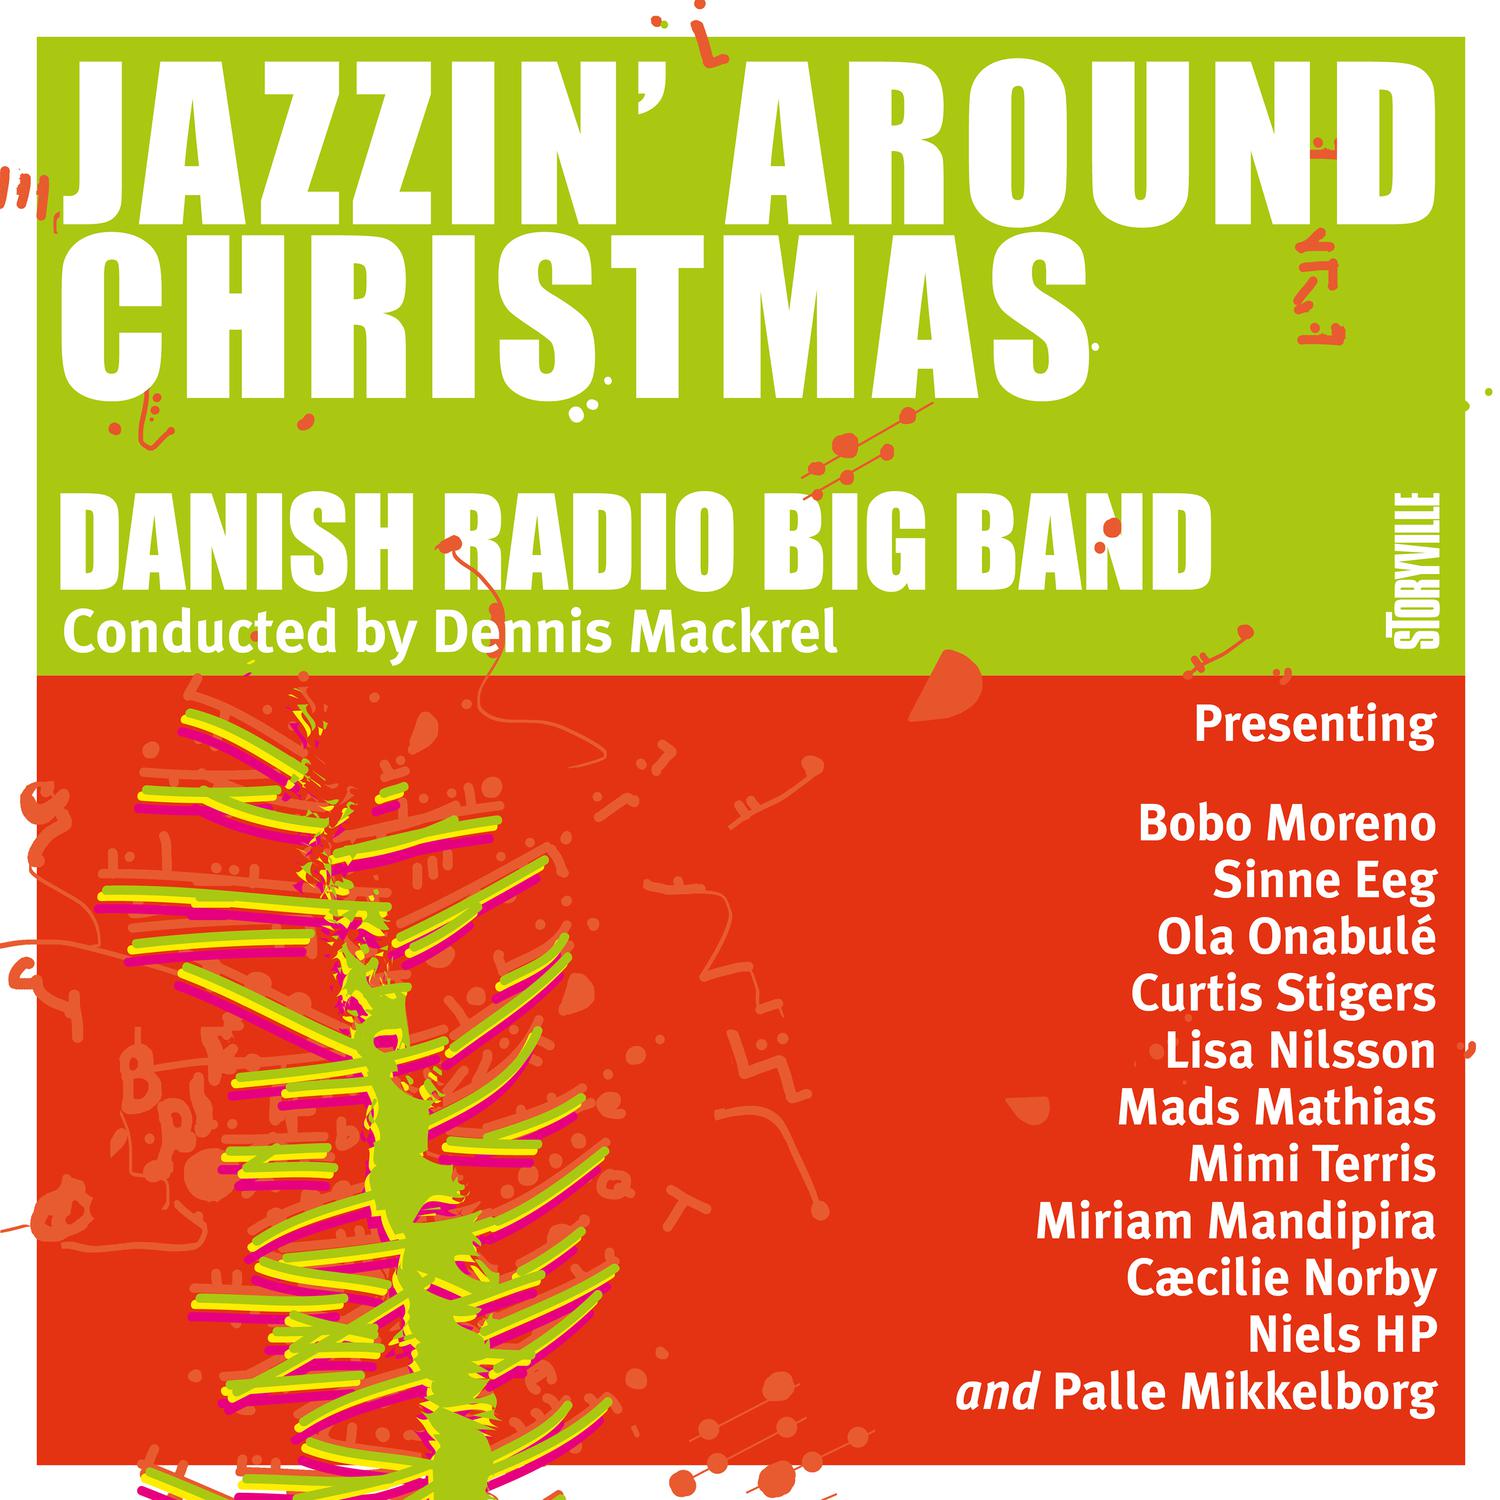 Danish Radio Big Band - I Pray on Christmas